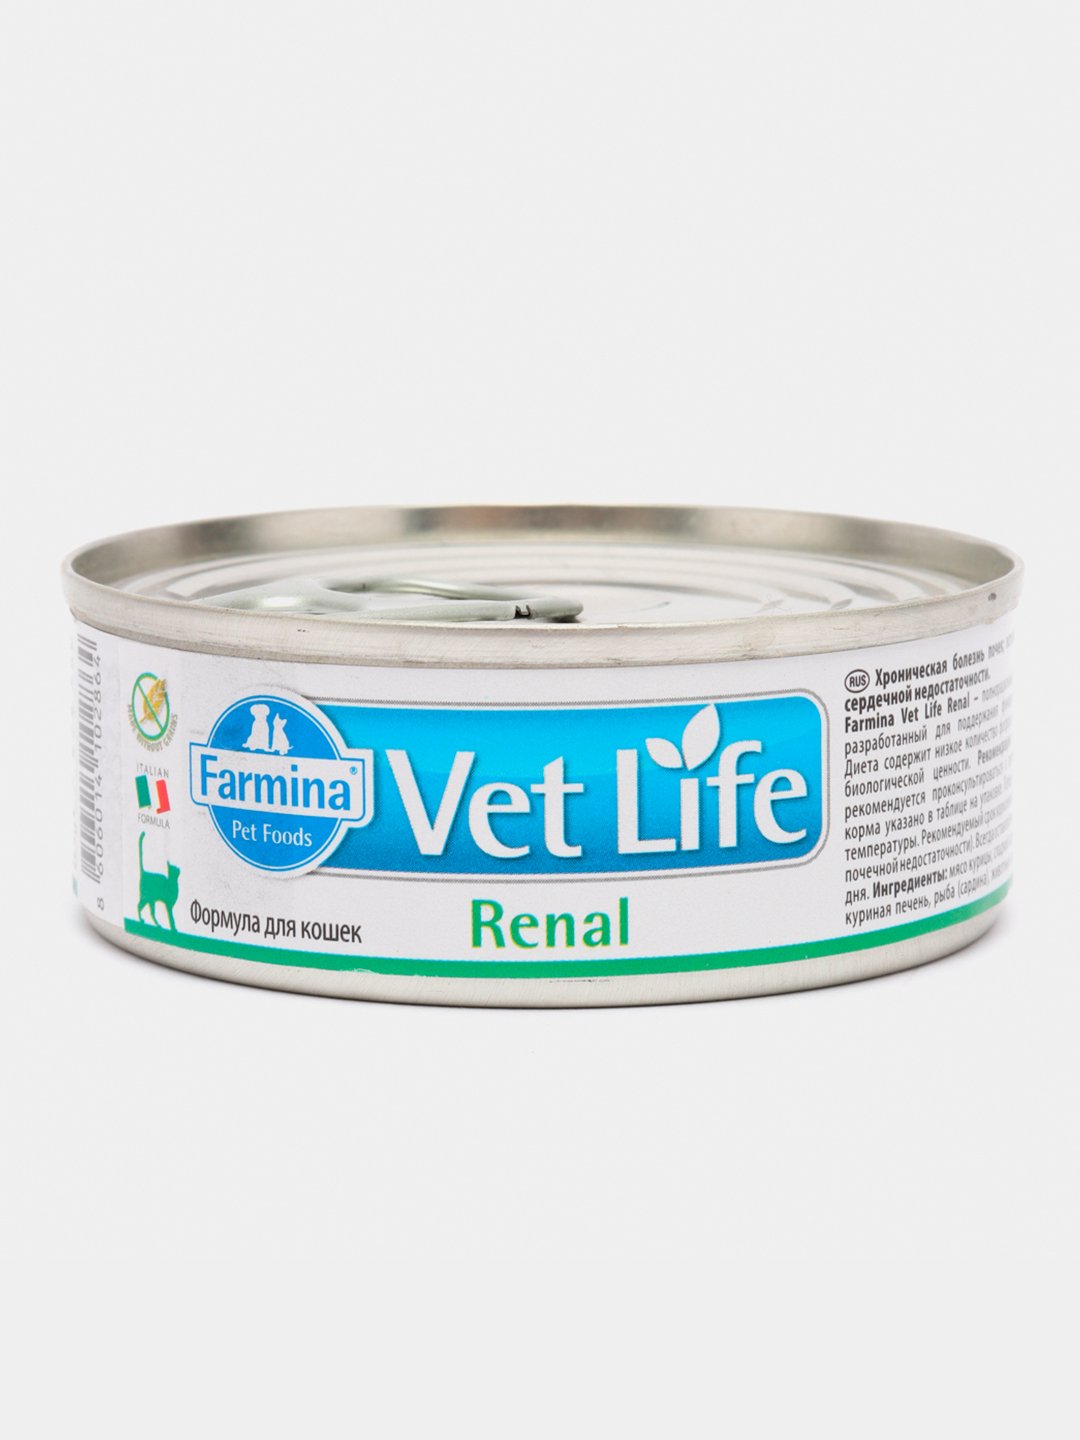 Farmina vet Life renal для кошек влажный. Farmina vet Life консервы для кошек. Корм при патологиях почек Фармина. Farmina vet Life renal при проблемах с почками 85 г цены.